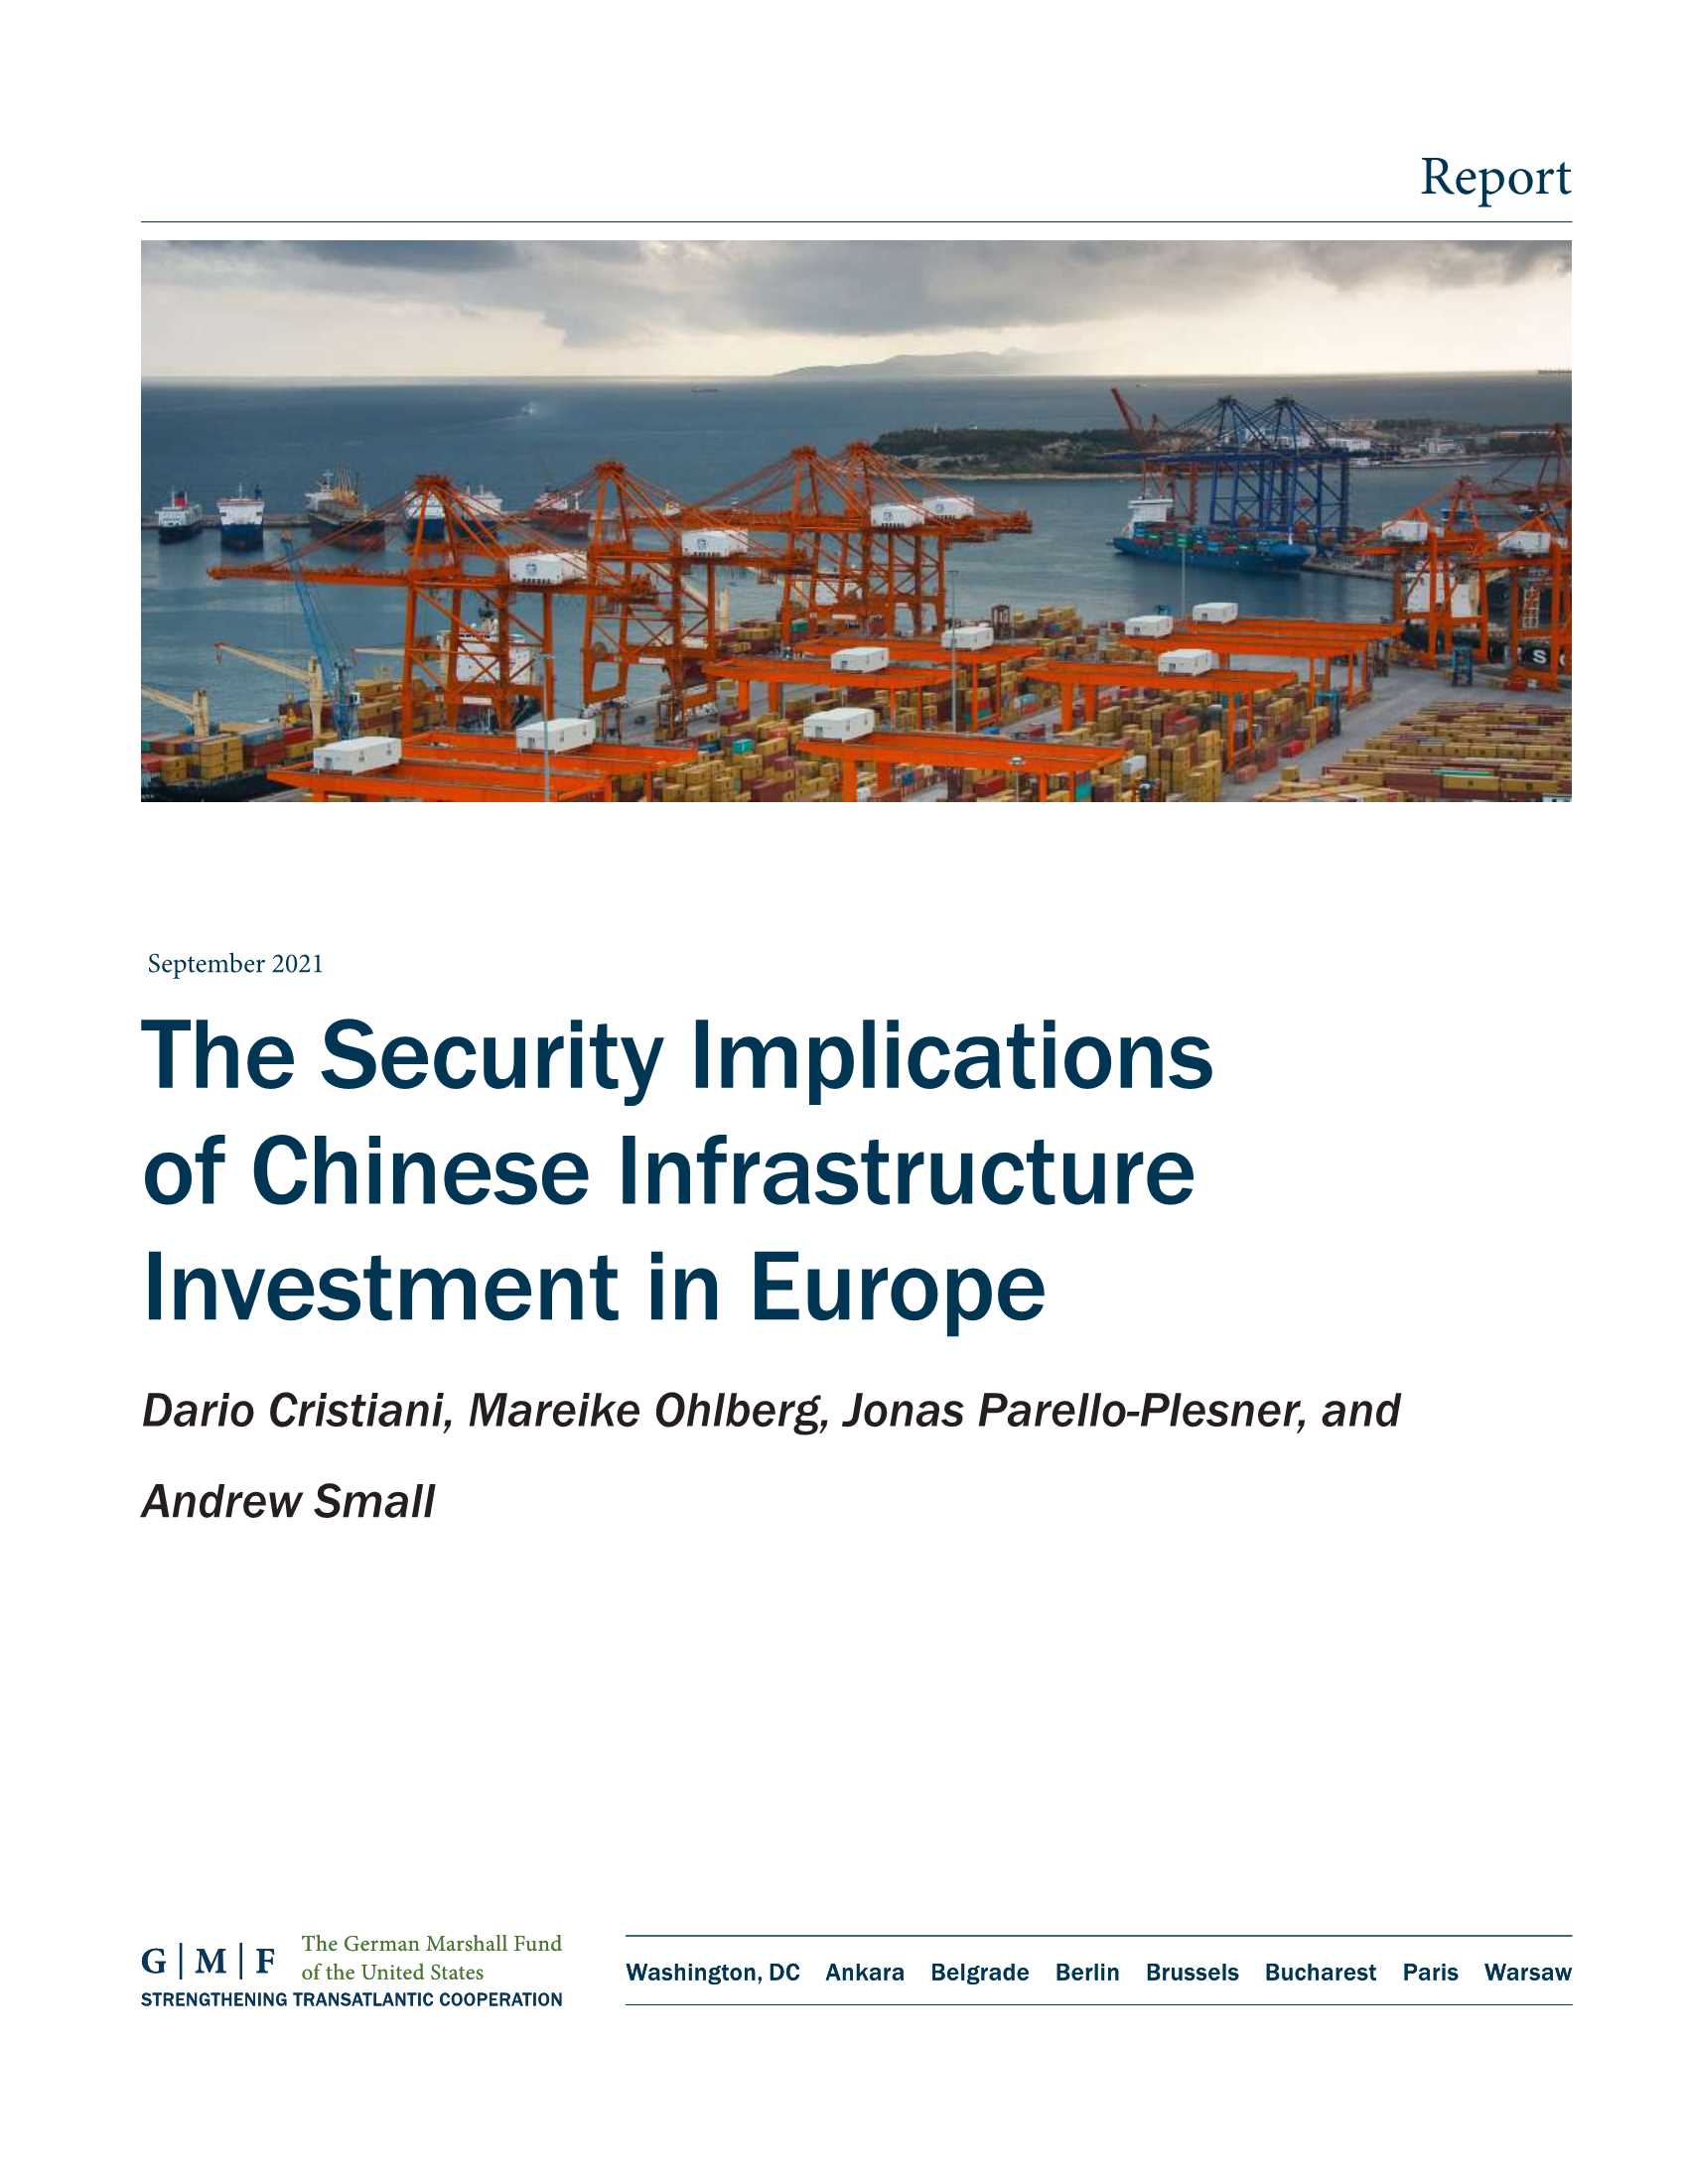 马歇尔基金会-中国在欧洲投资基础设施的安全影响-2021.10-50页